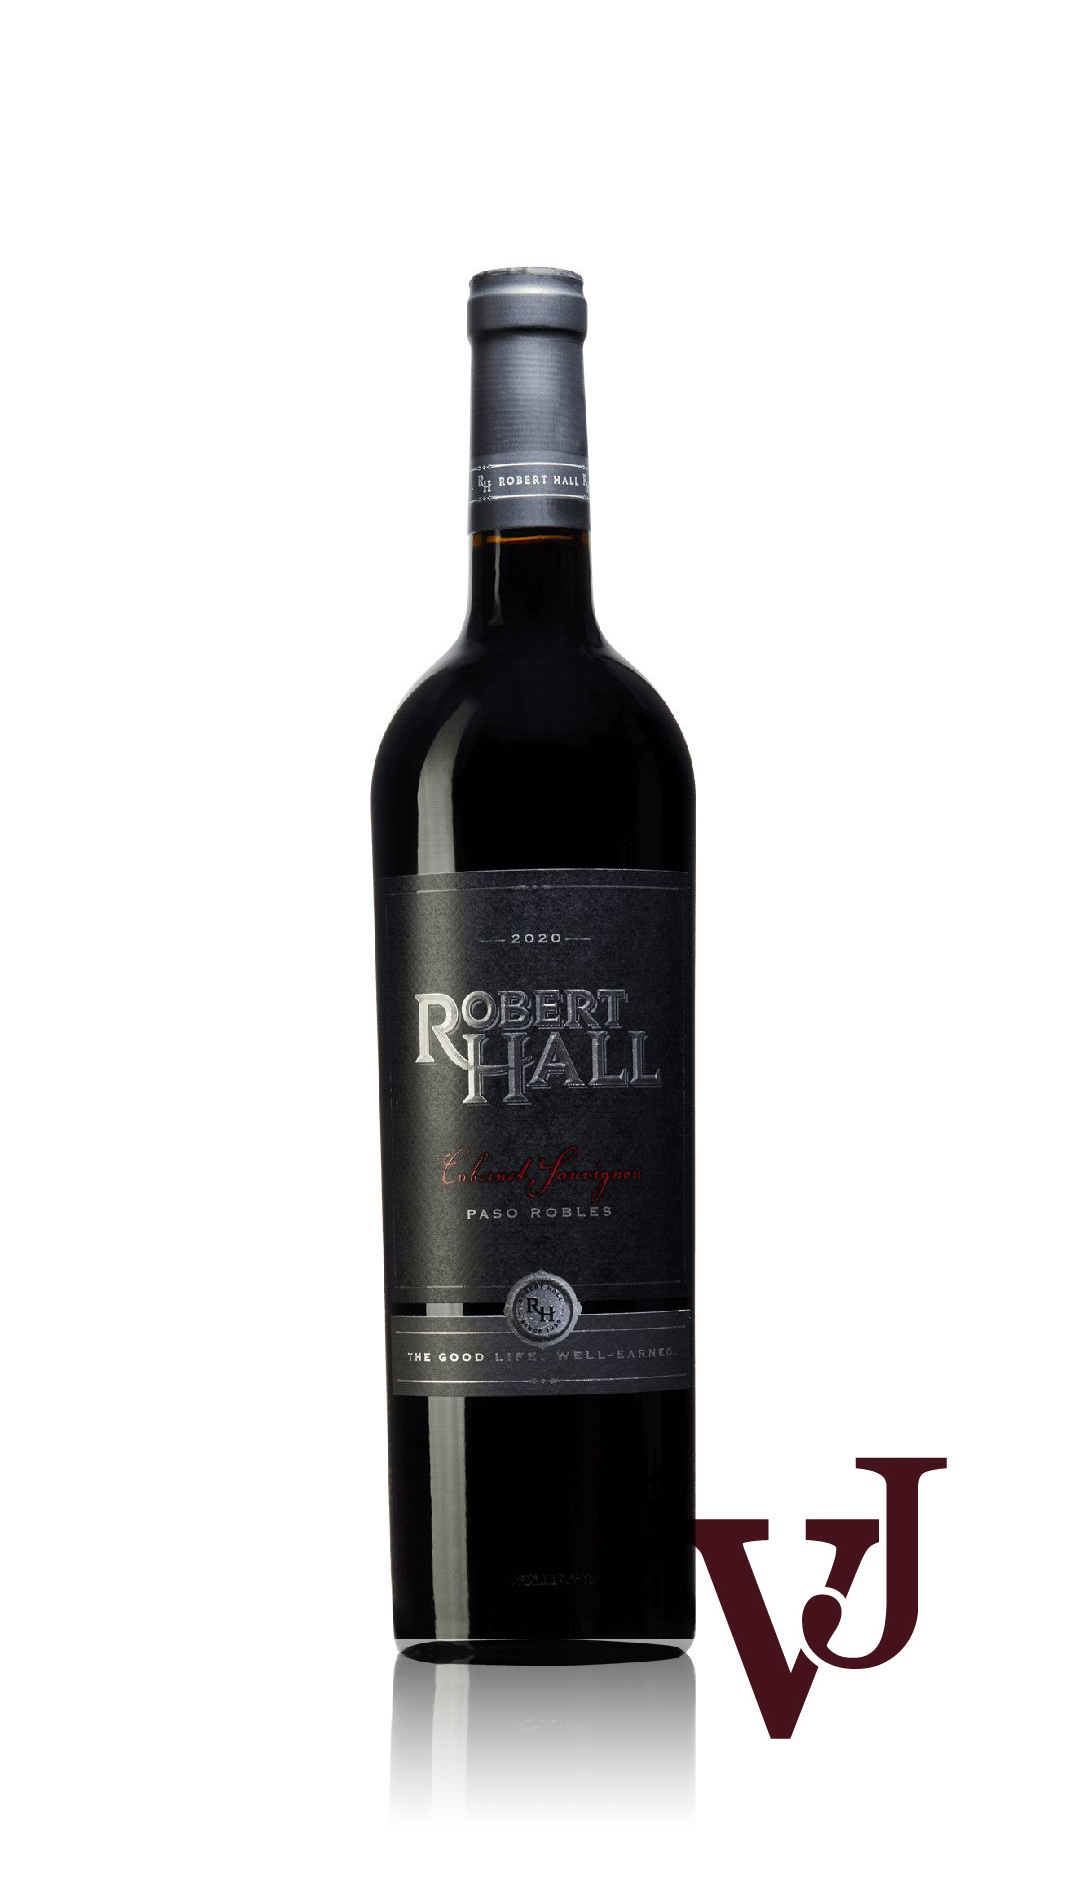 Rött Vin - Robert Hall Paso Robles Cabernet Sauvignon 2020 artikel nummer 9515001 från producenten Robert Hall Winery från området USA - Vinjournalen.se